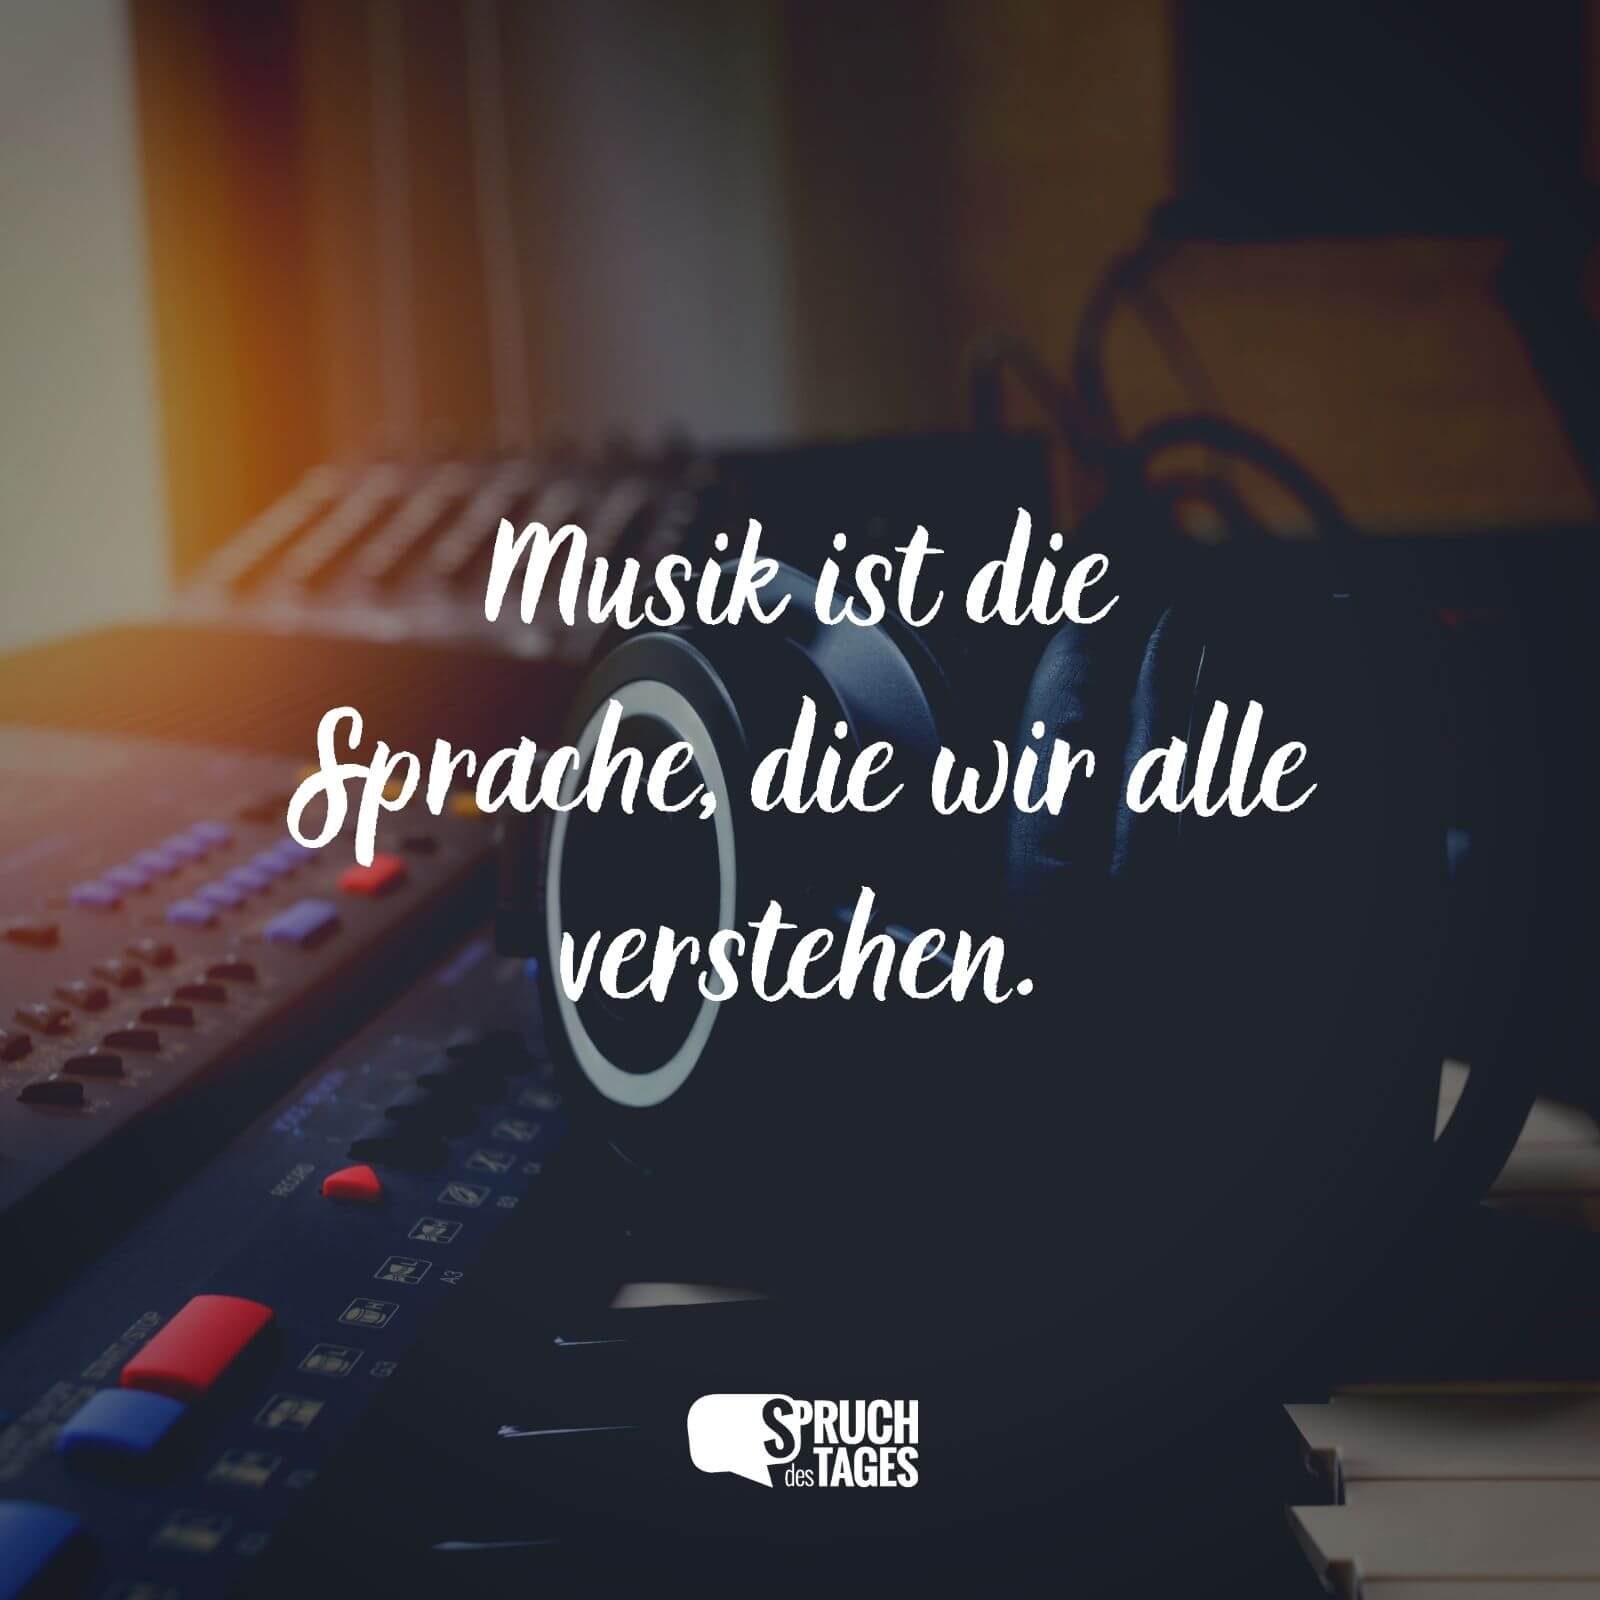 Musik ist die Sprache, die wir alle verstehen.